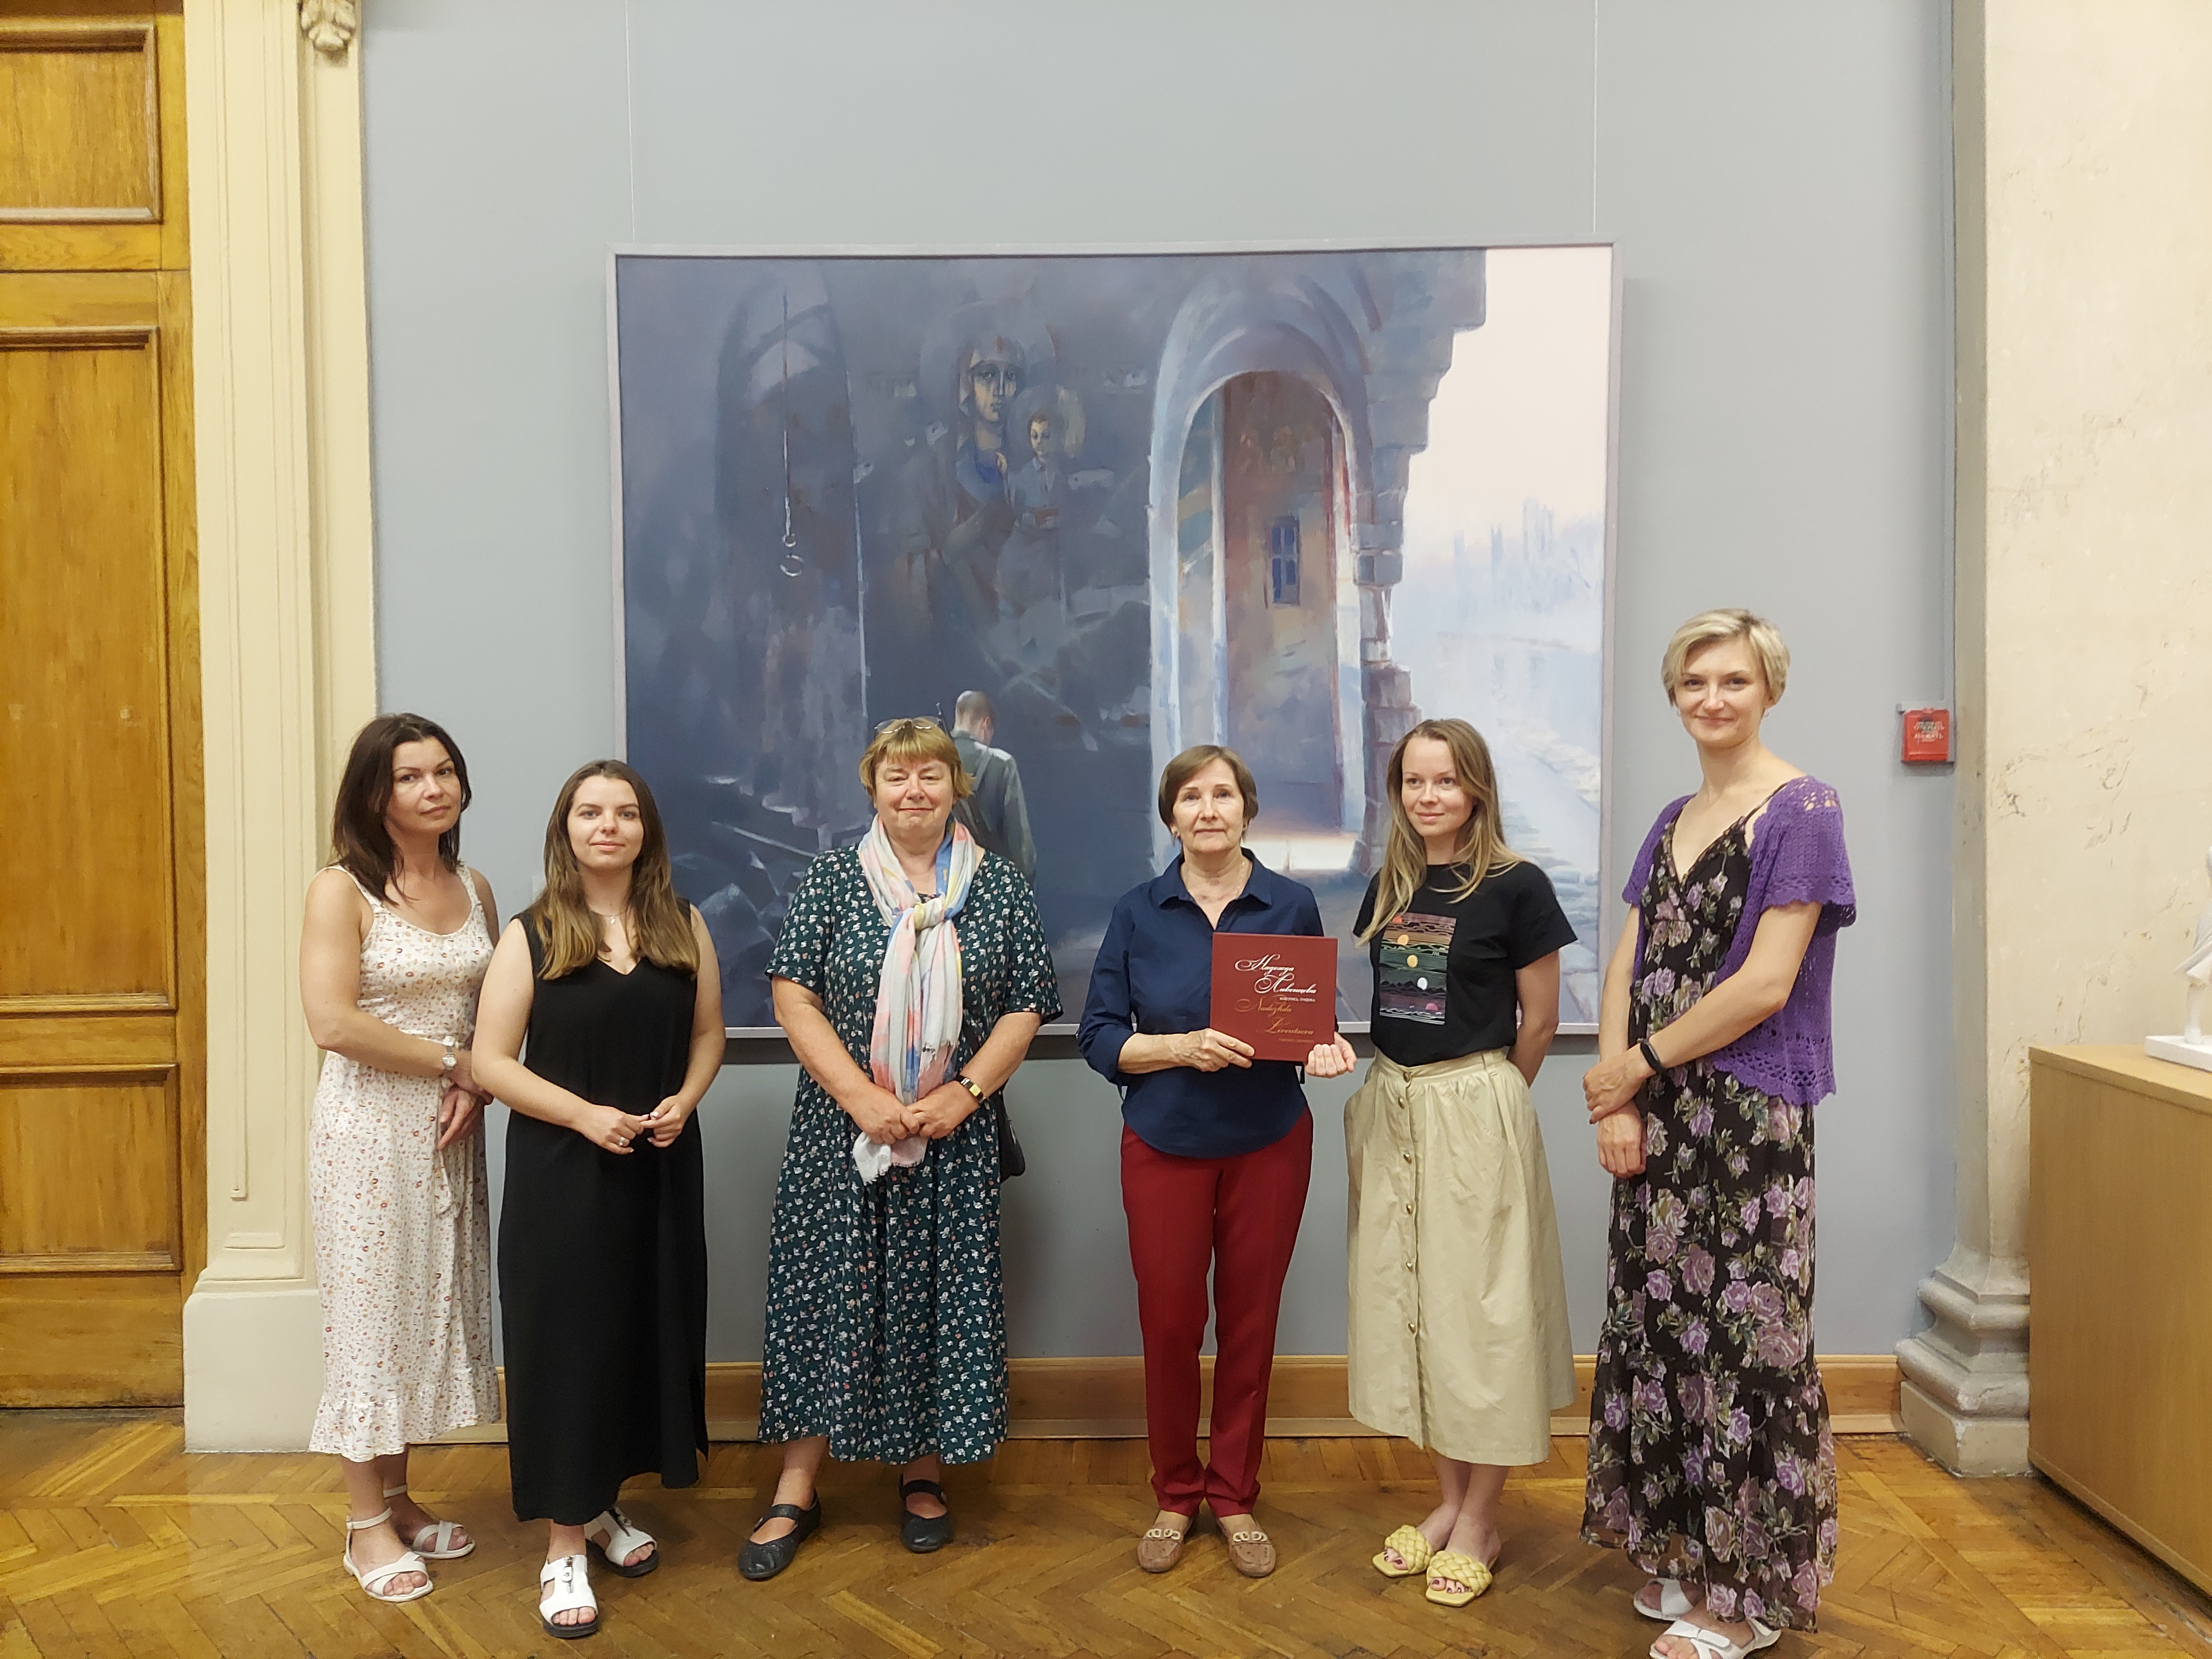 Художница Надежда Ливенцева посетила выставку "Река времени" и подарила свой каталог библиотеке Художественного музея